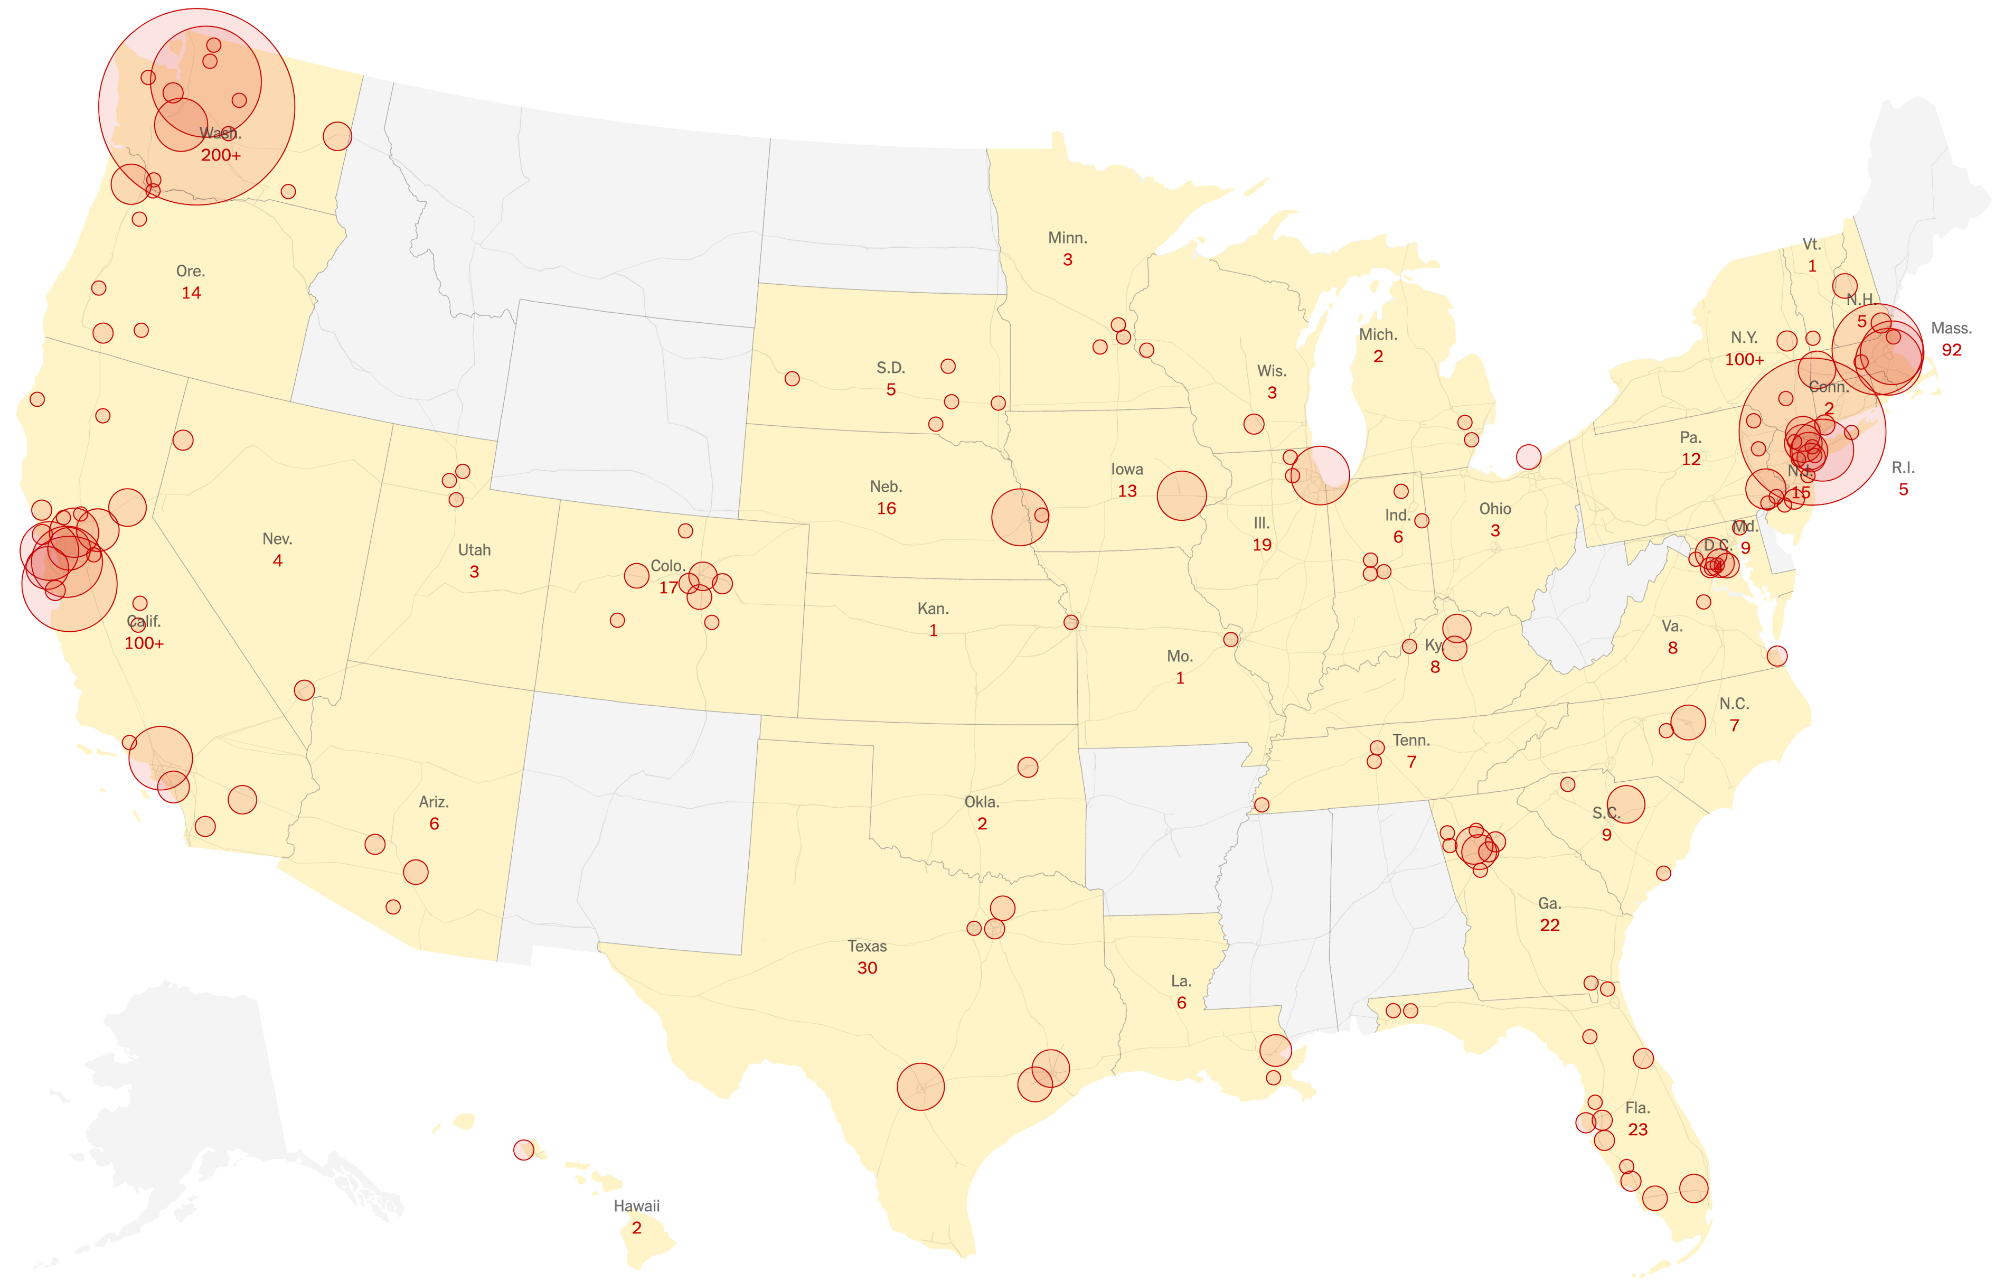 Количество случаев заражения коронавирусом в США по состоянию на 10 марта. Источник: The New York Times